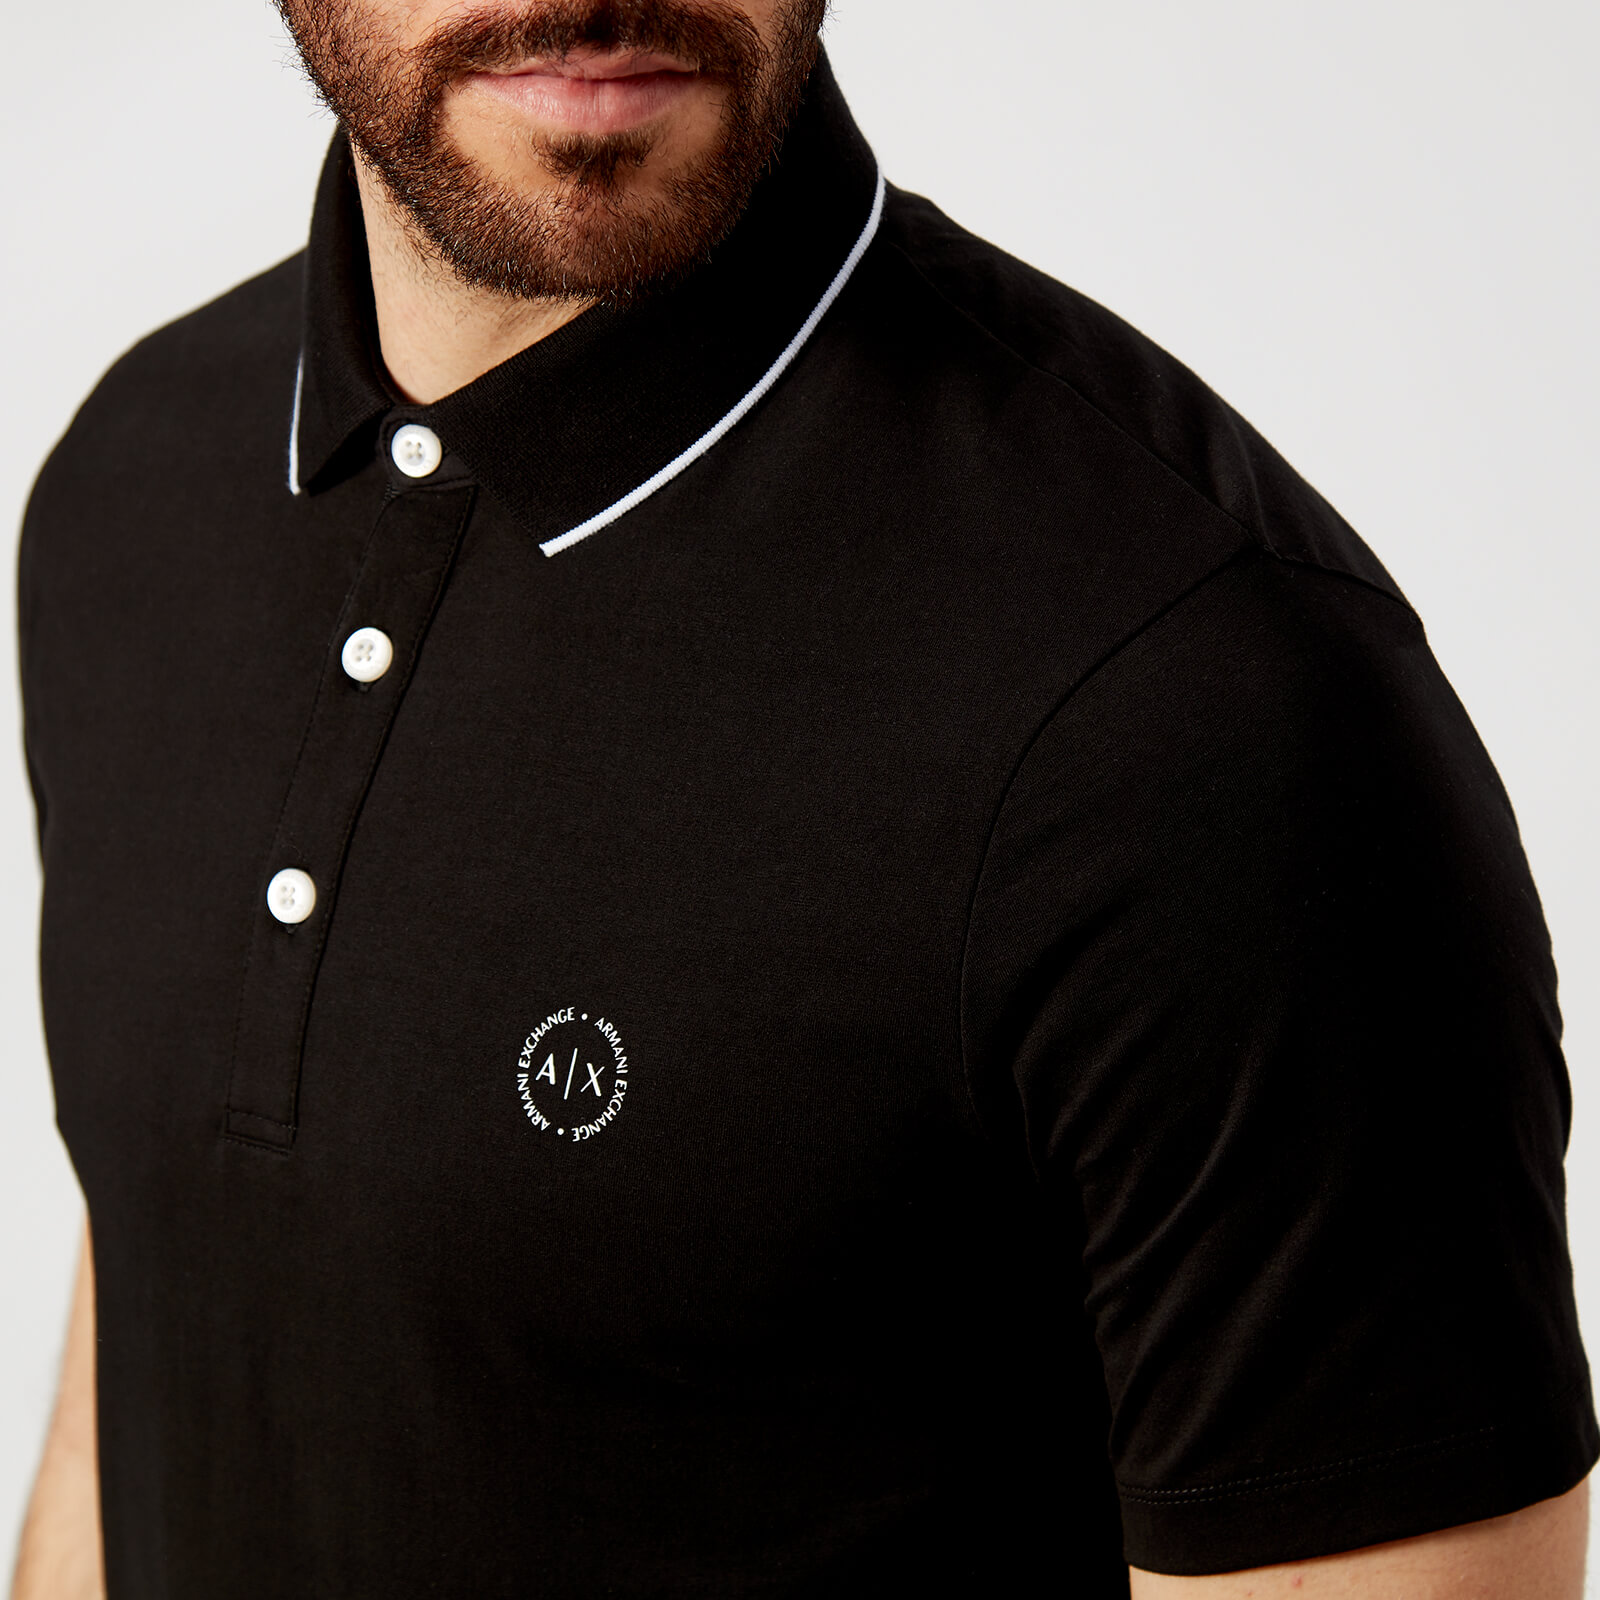 Armani Exchange Men's Tipped Polo Shirt - Black - M - Black